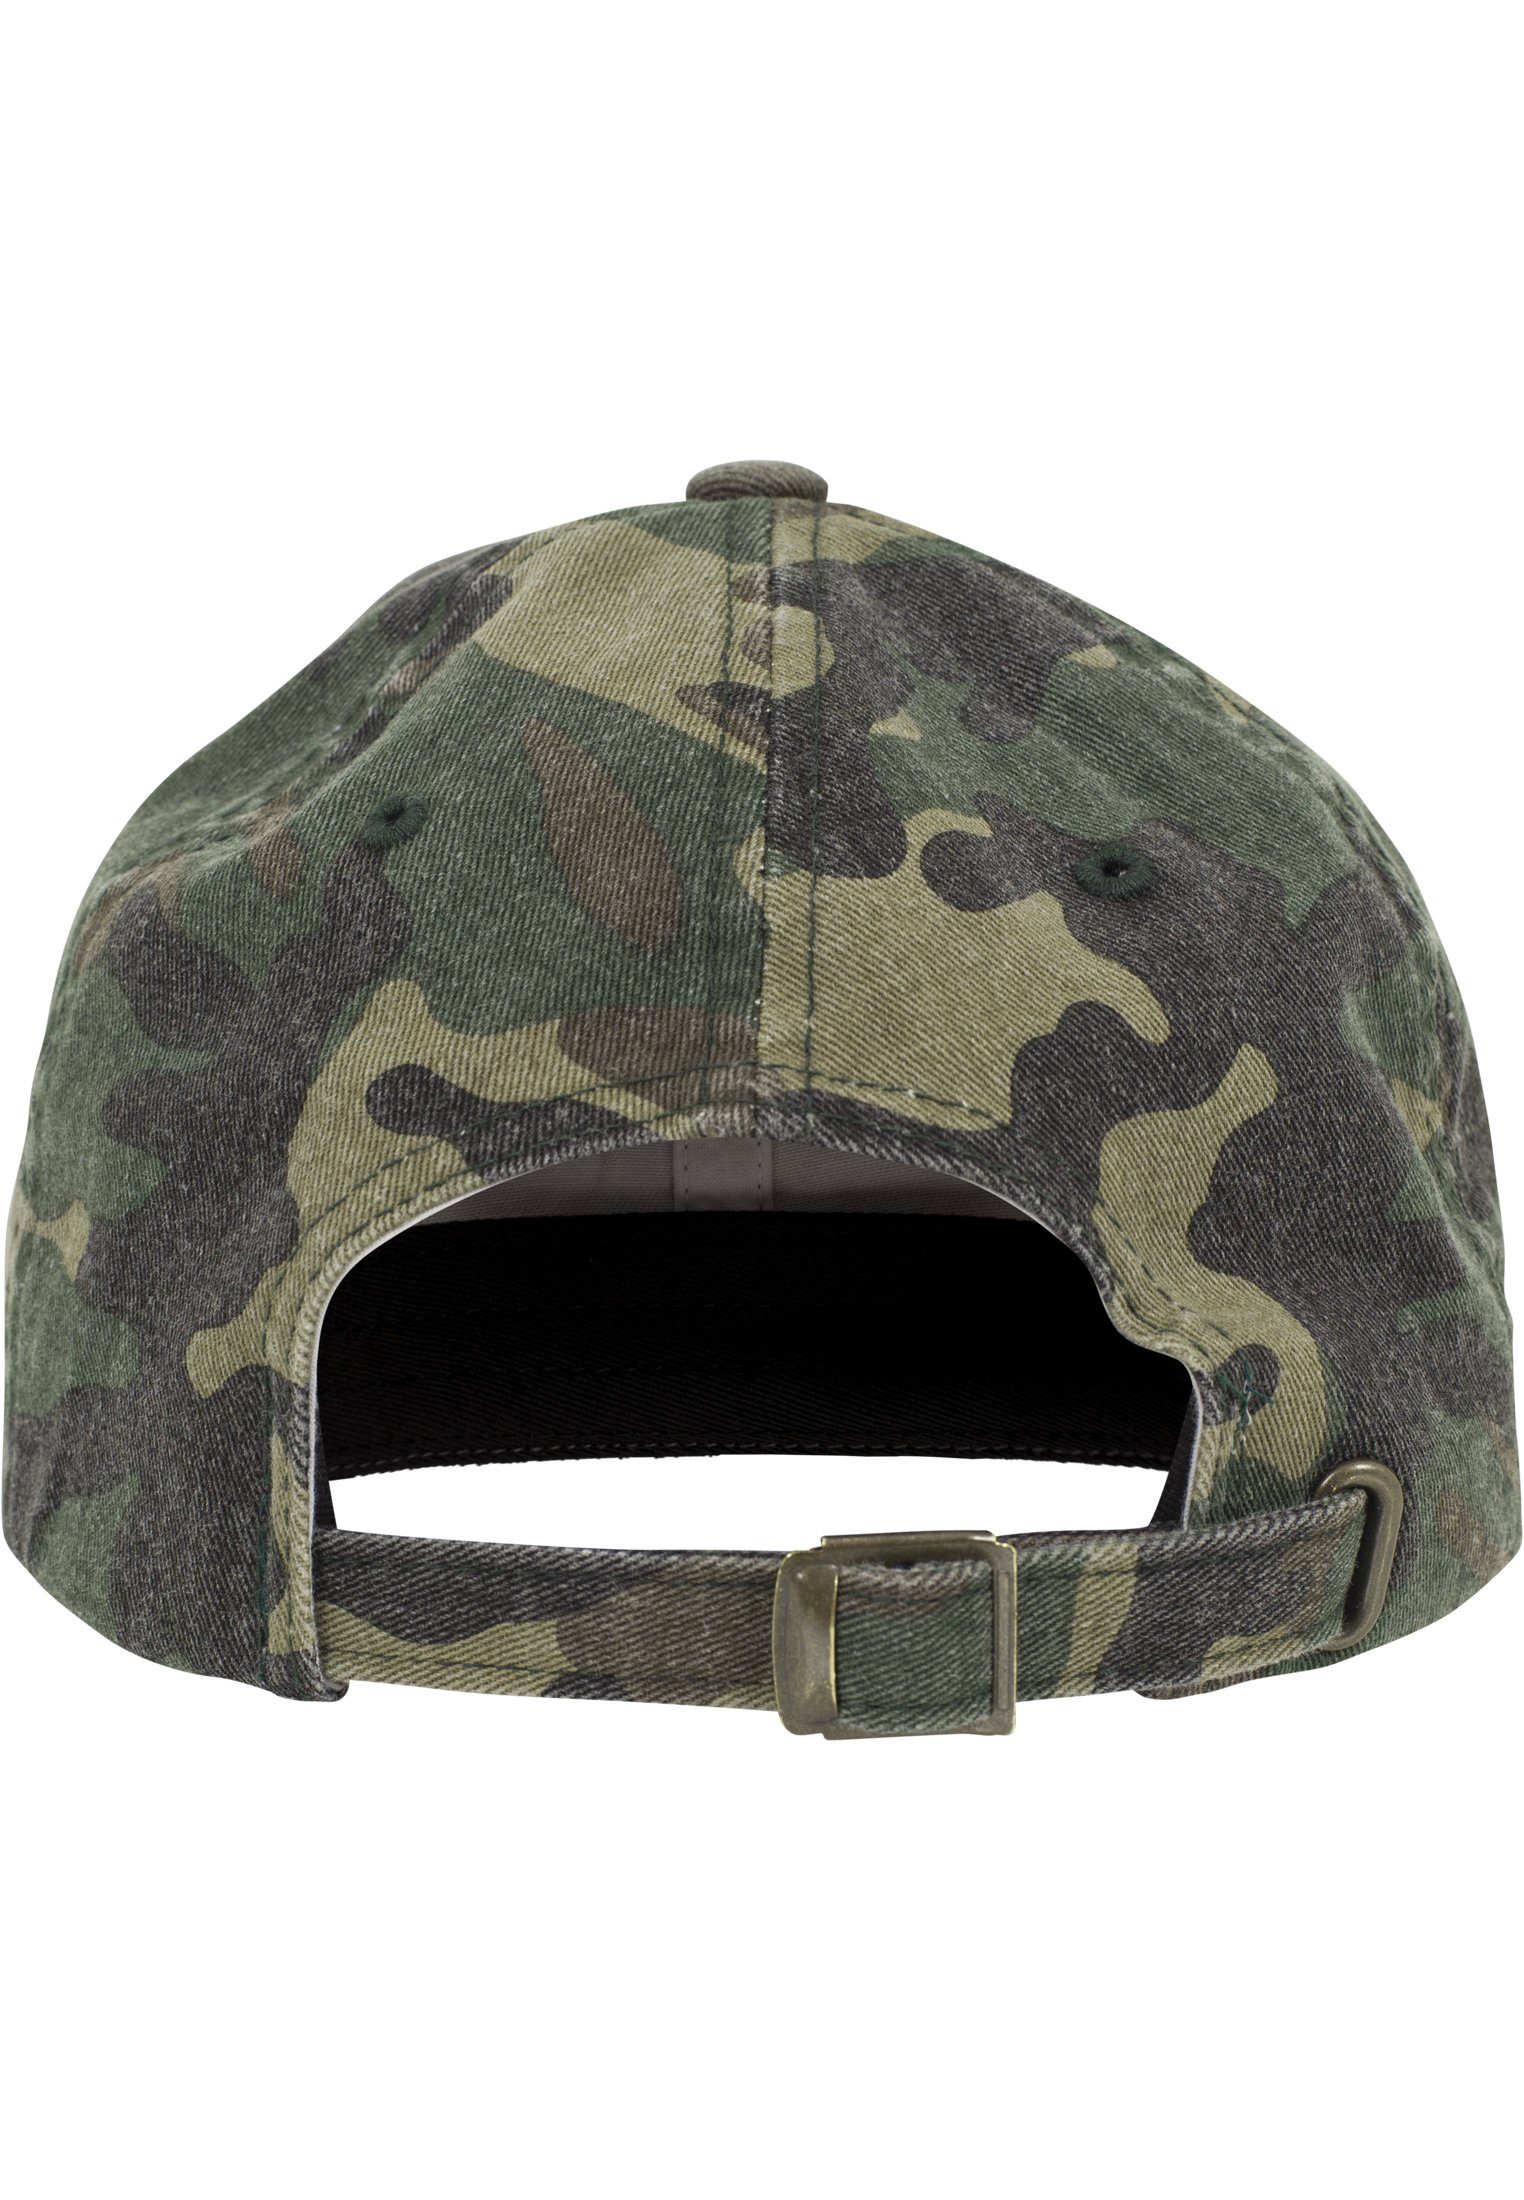 Flex Washed Accessoires Low woodcamouflage Cap Profile Camo Cap Flexfit